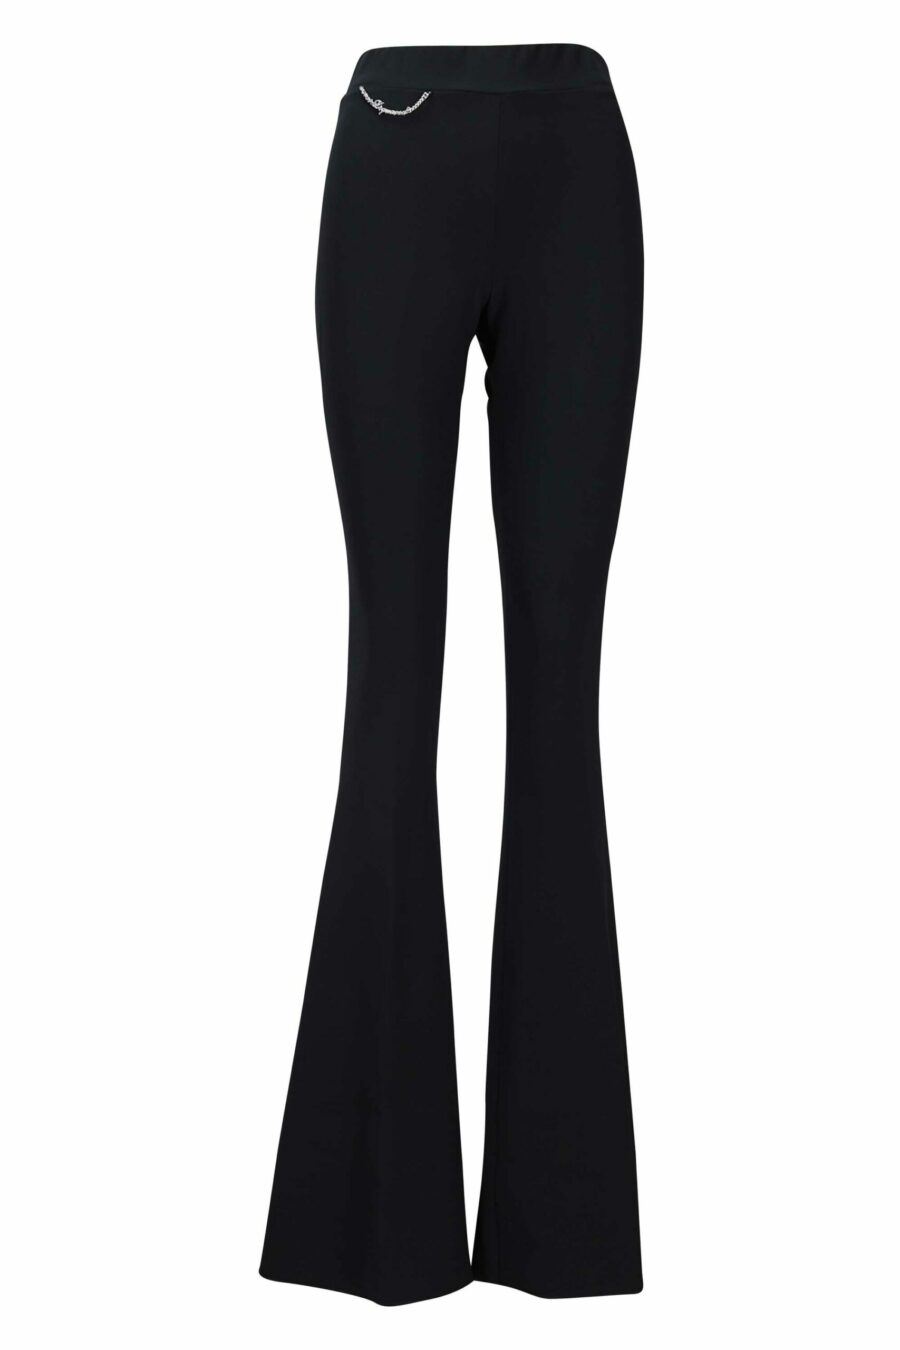 Pantalon taille haute 70's jean évasé noir - 8054148068950 scaled